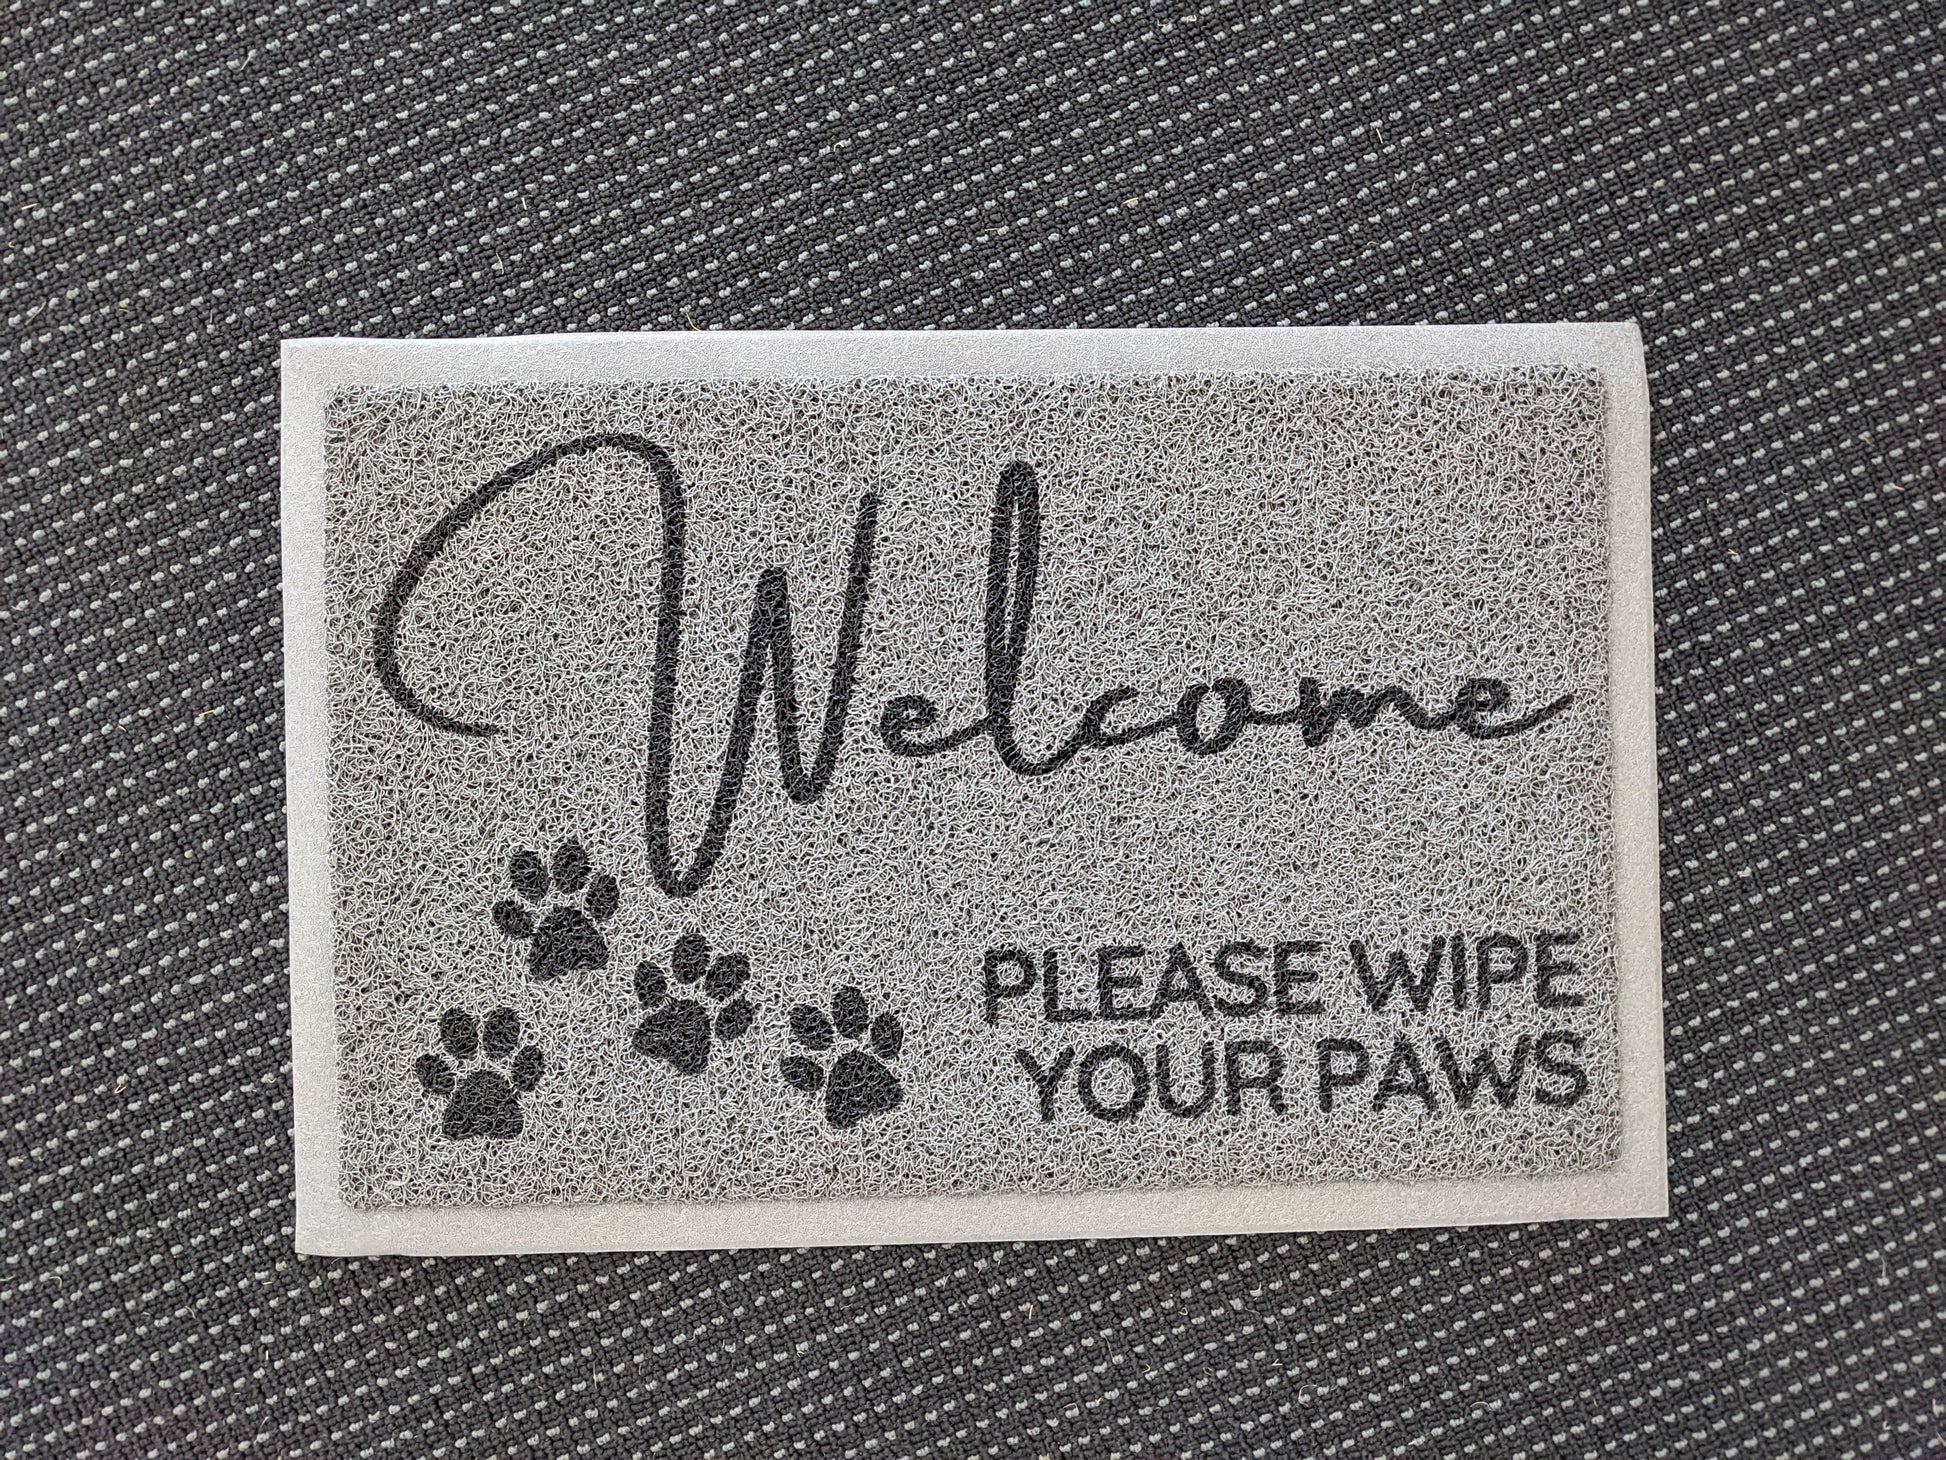 Welcome Please Wipe your paws doormat - Personalised Doormat Australia